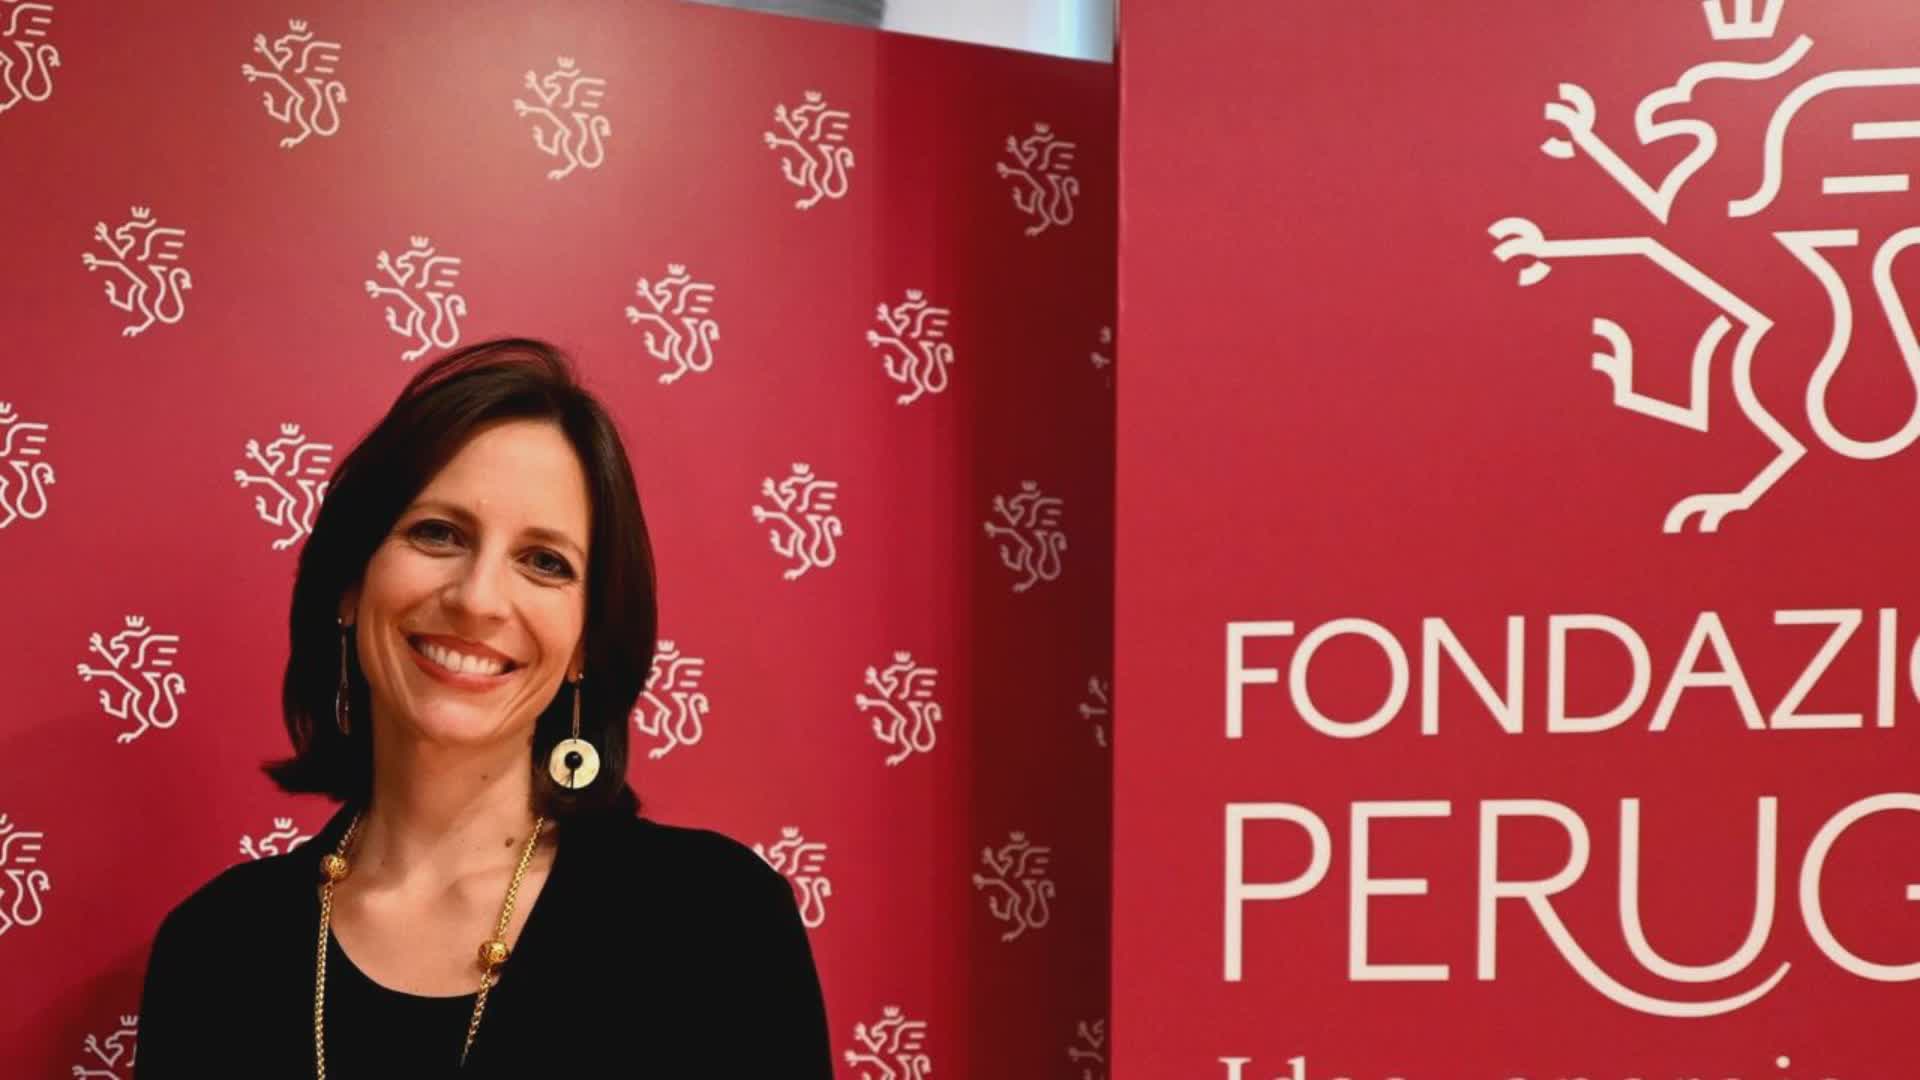 Fondazione Perugia sostiene progetto Centro pari opportunità